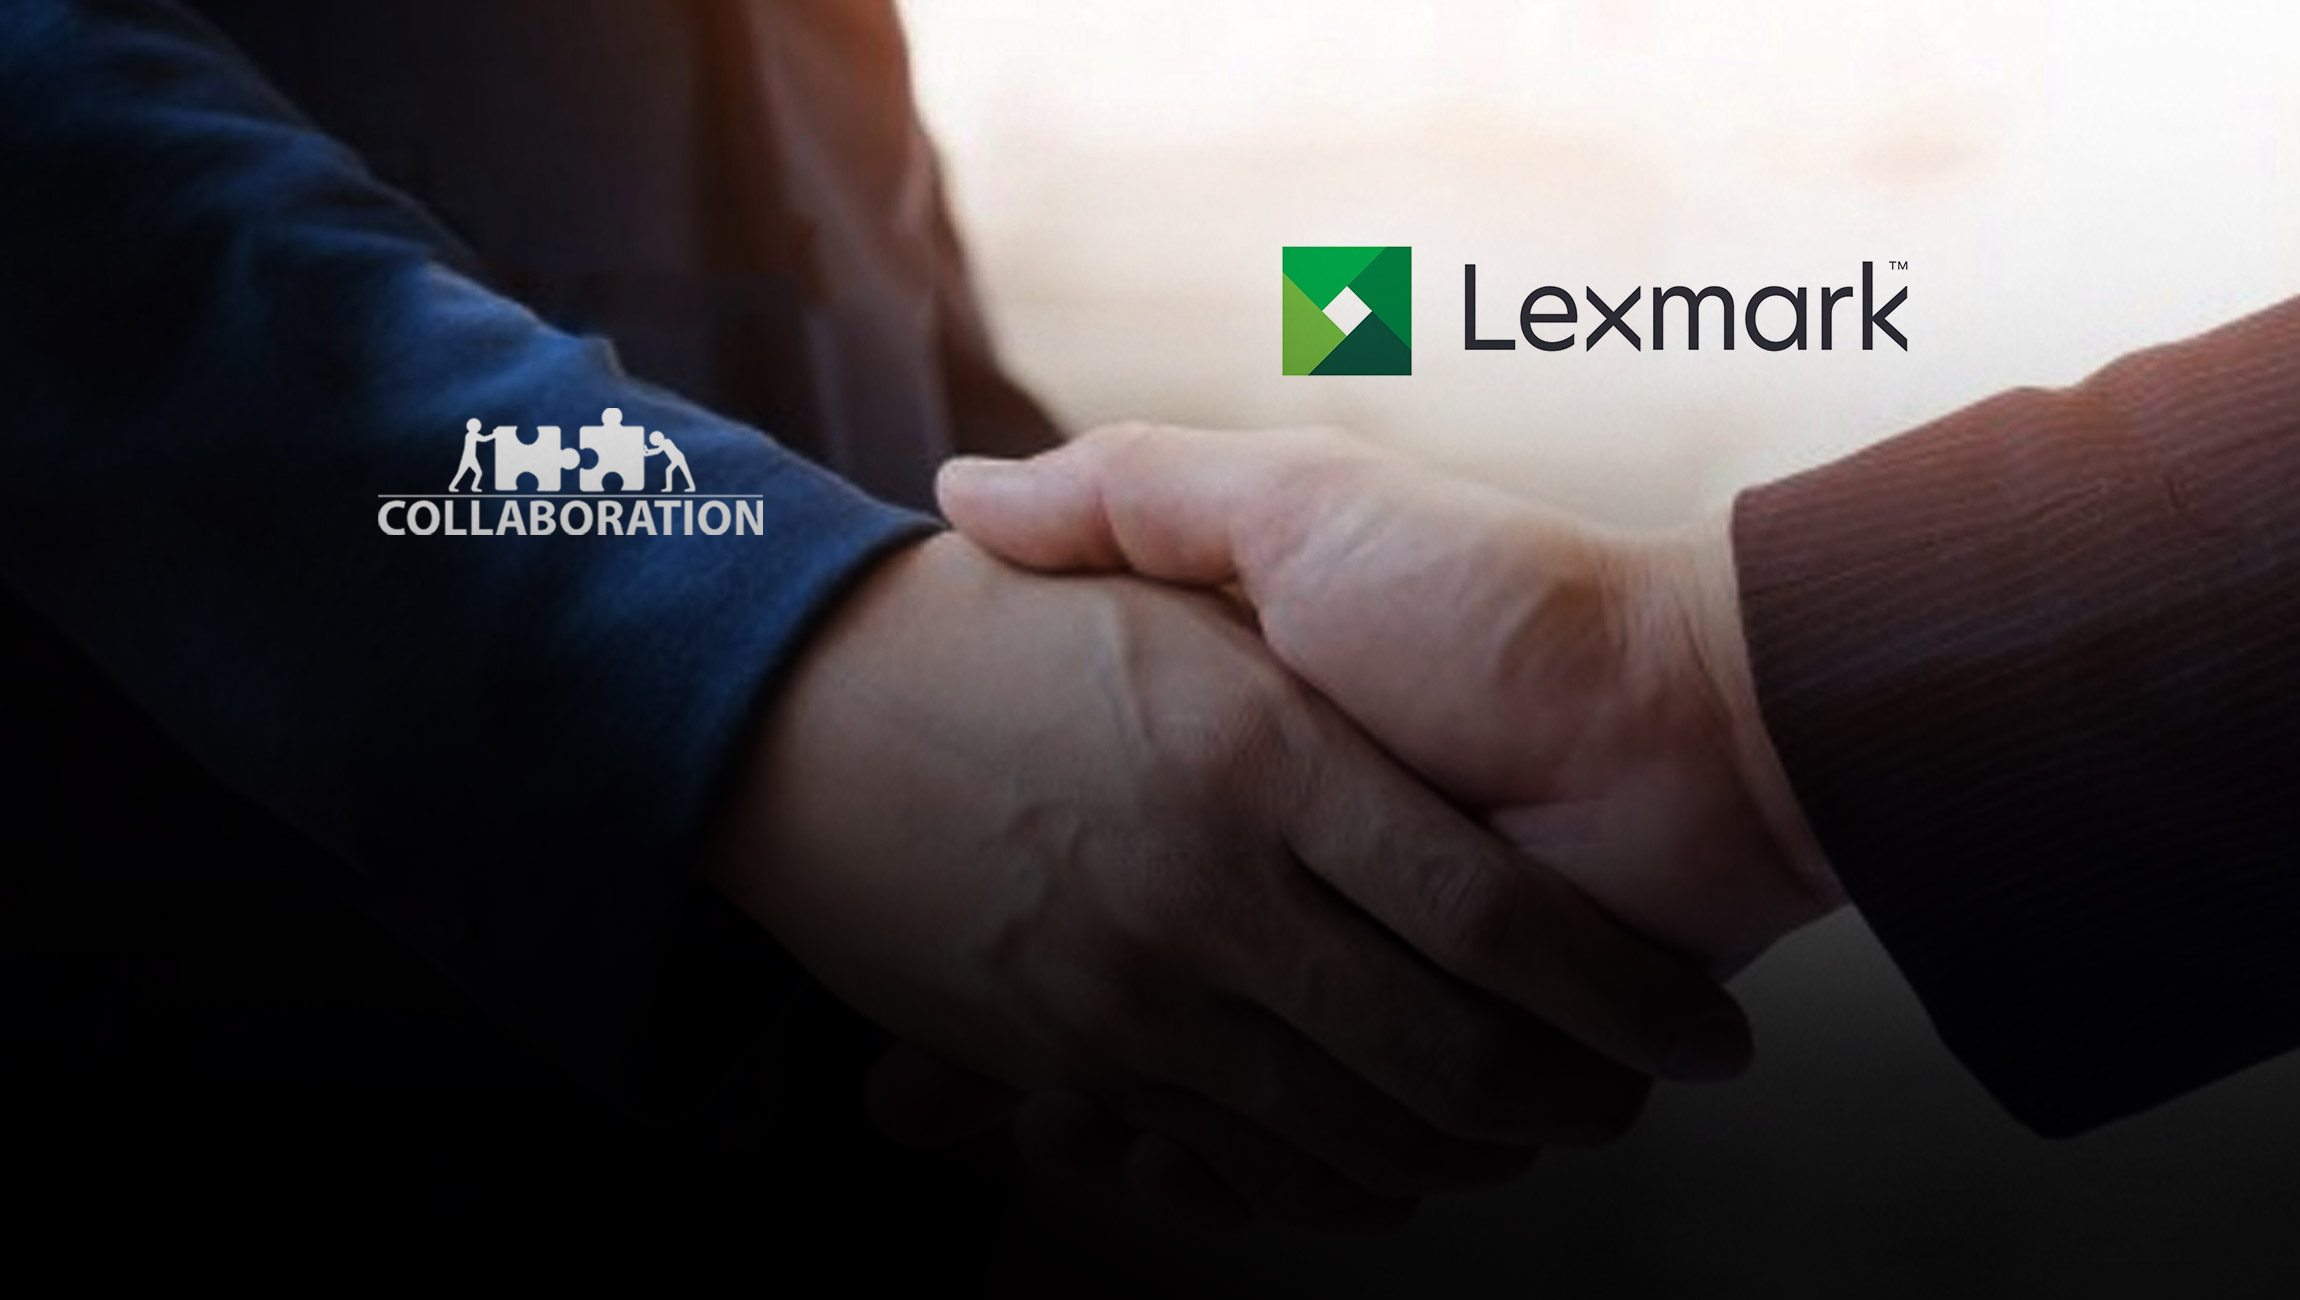 Lexmark Launches New Global Partner Program